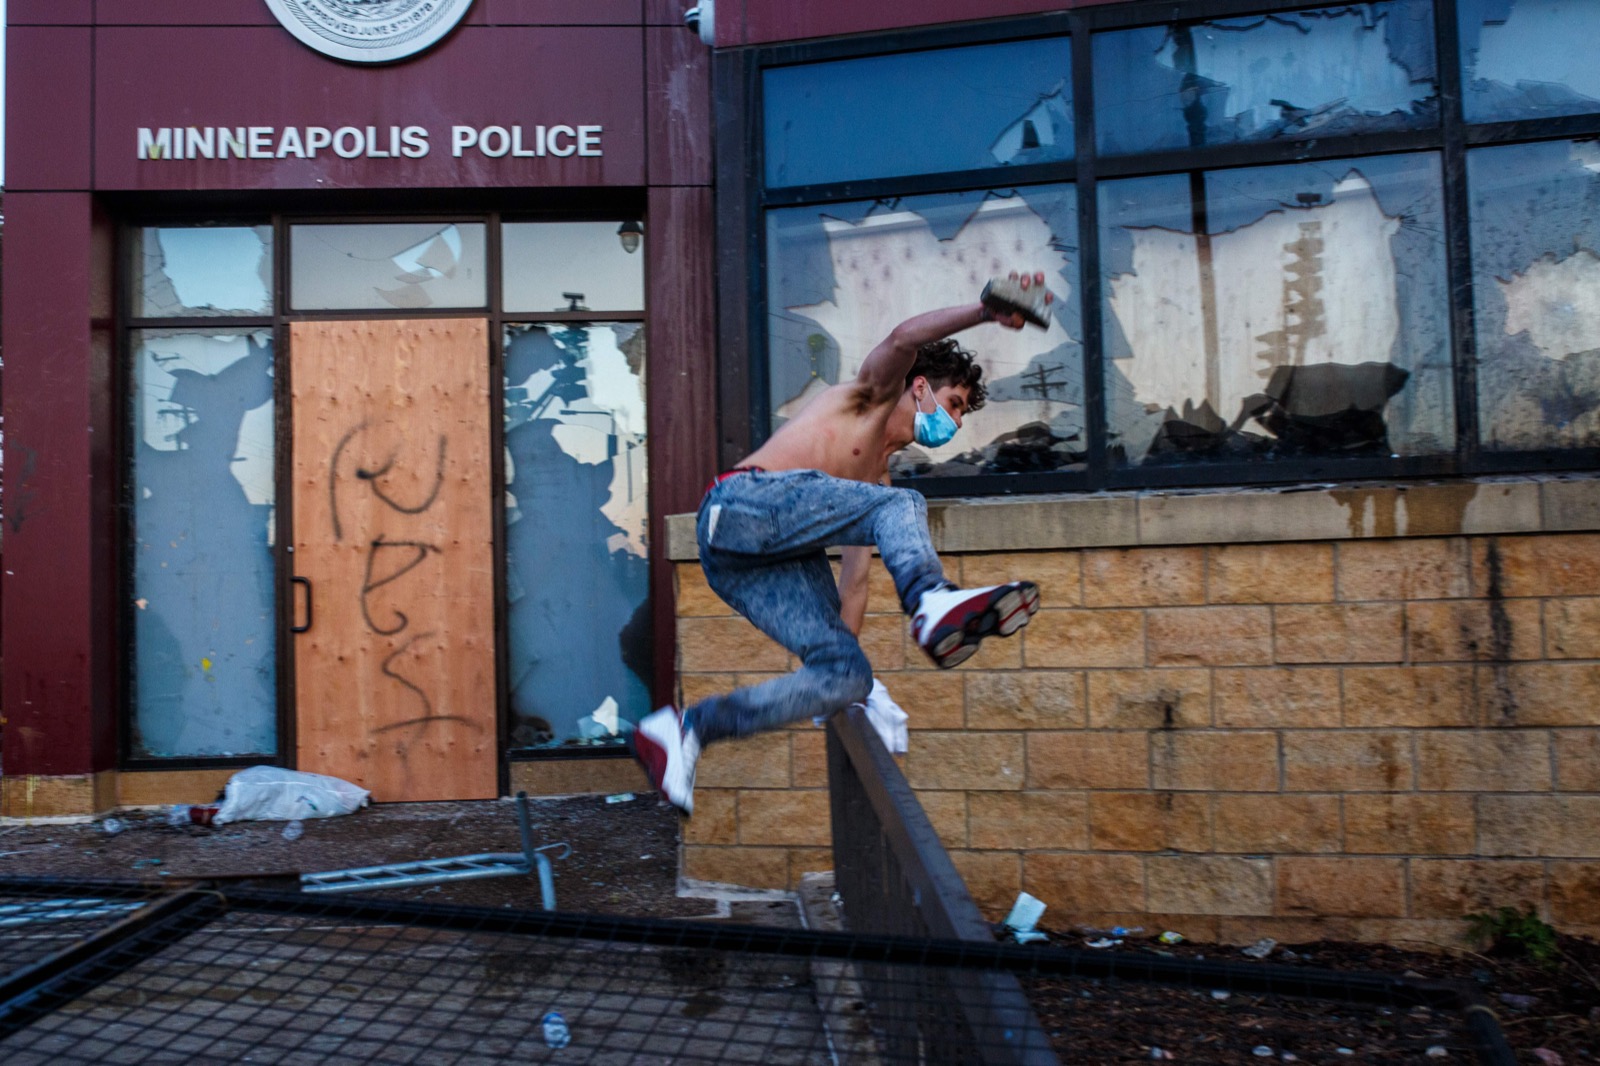 Người biểu tình cầm gạch đá xông vào bên trong sở cảnh sát số 3 Minneapolis. Ảnh: KEREM YUCEL/AFP via Getty Images